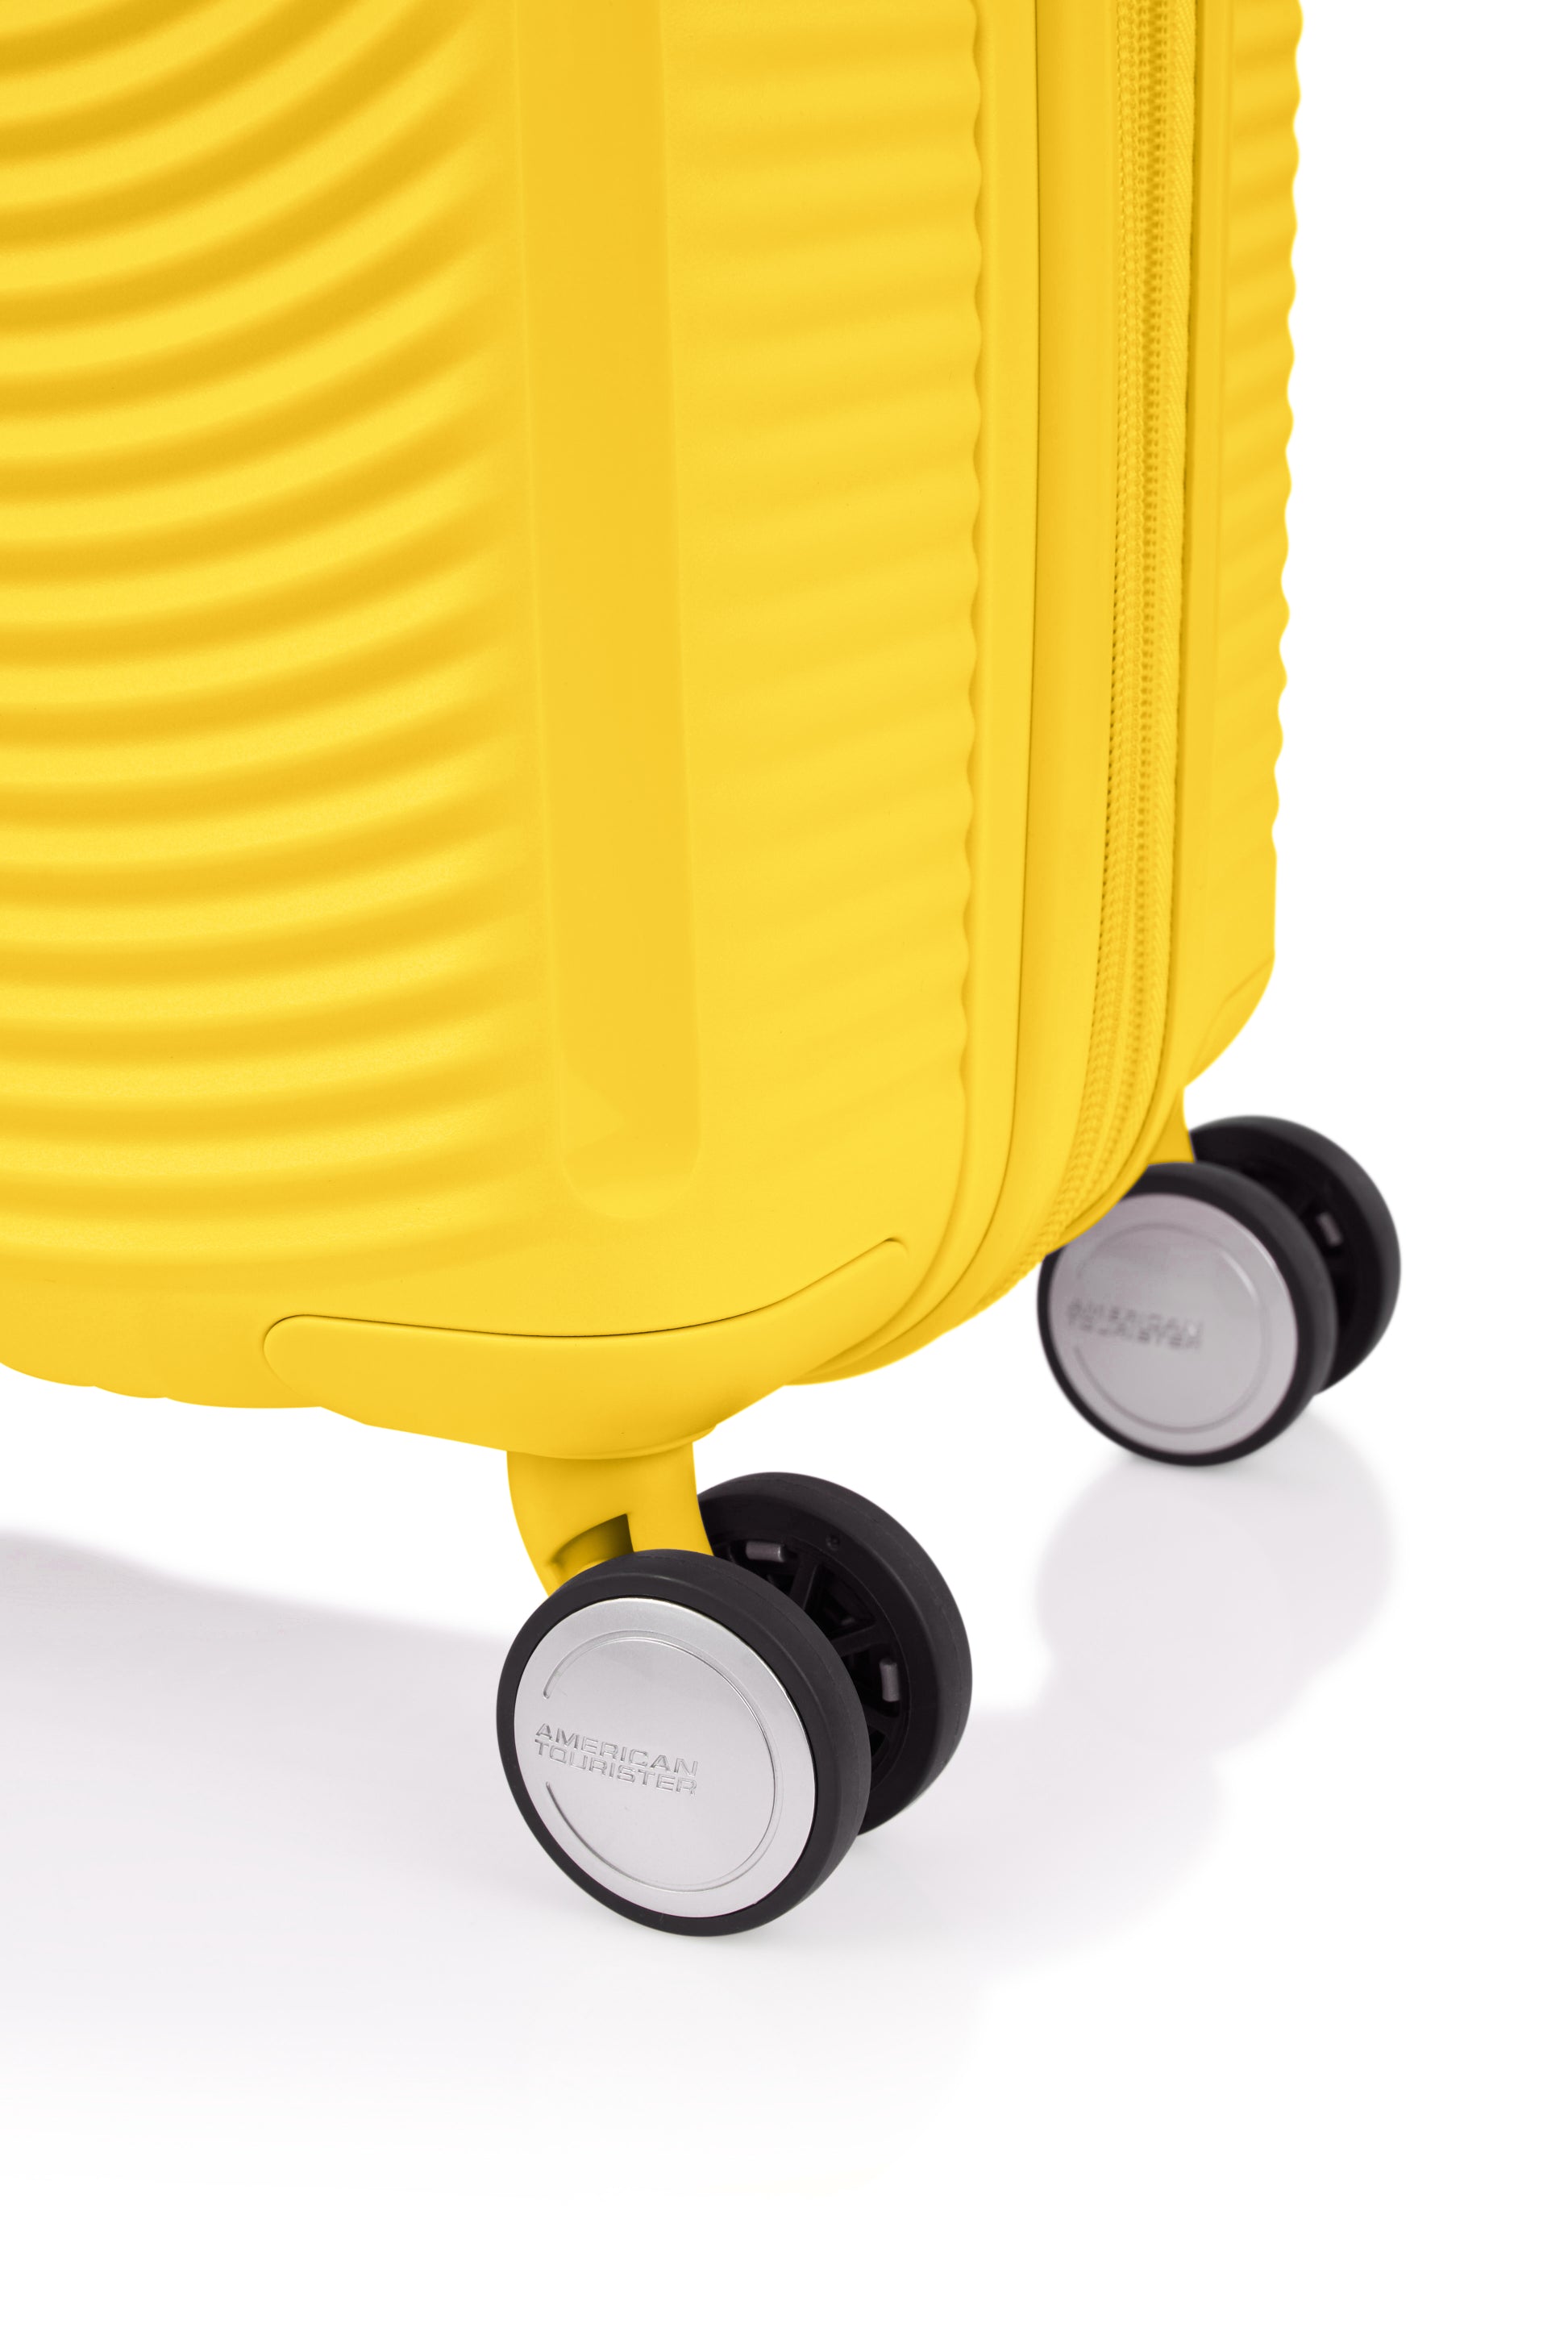 American Tourister - Curio 2.0 69cm Medium Suitcase - Golden Yellow-6